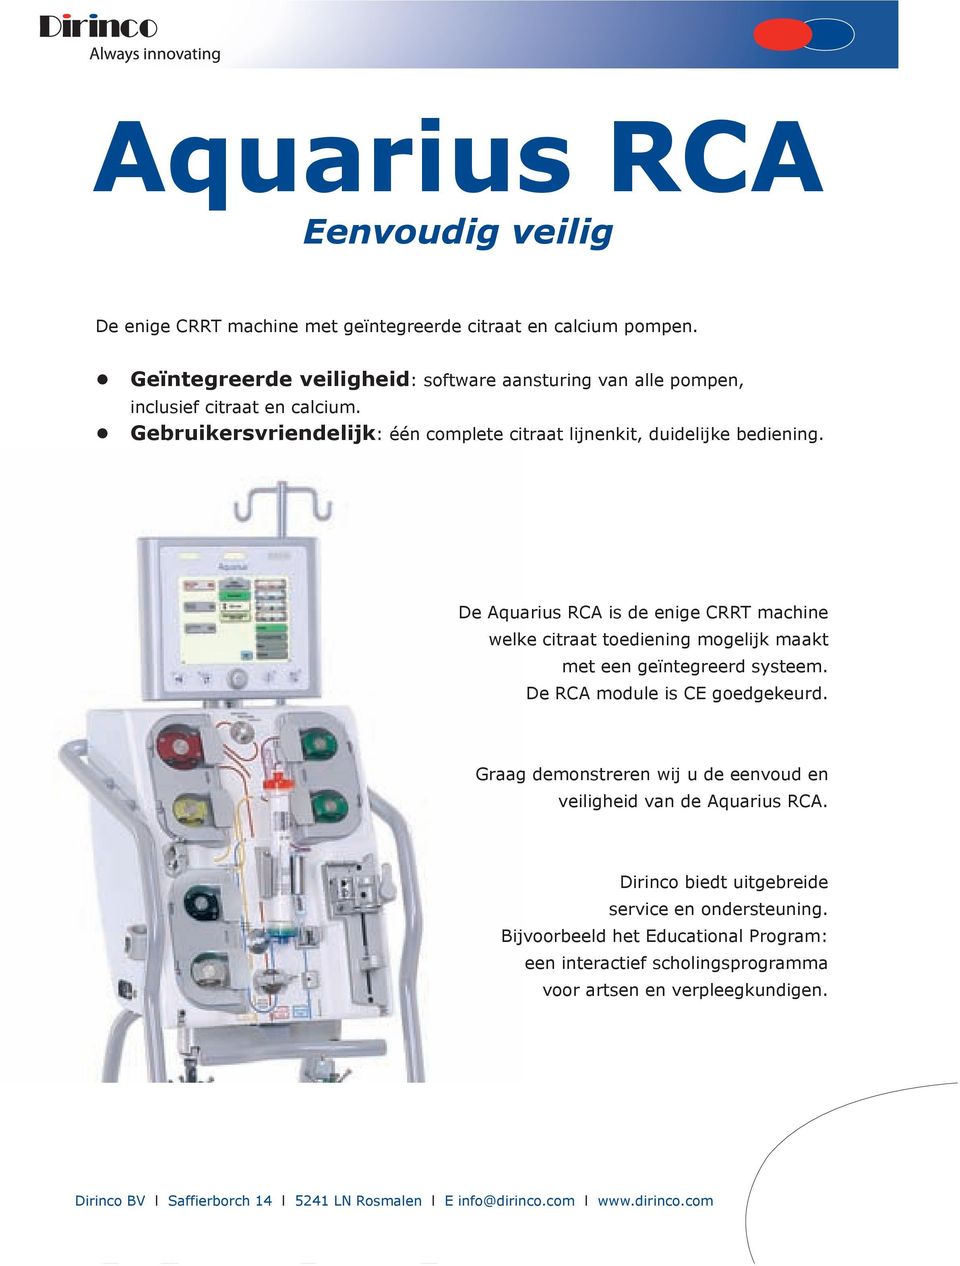 De Aquarius RCA is de enige CRRT machine welke citraat toediening mogelijk maakt met een geïntegreerd systeem. De RCA module is CE goedgekeurd.